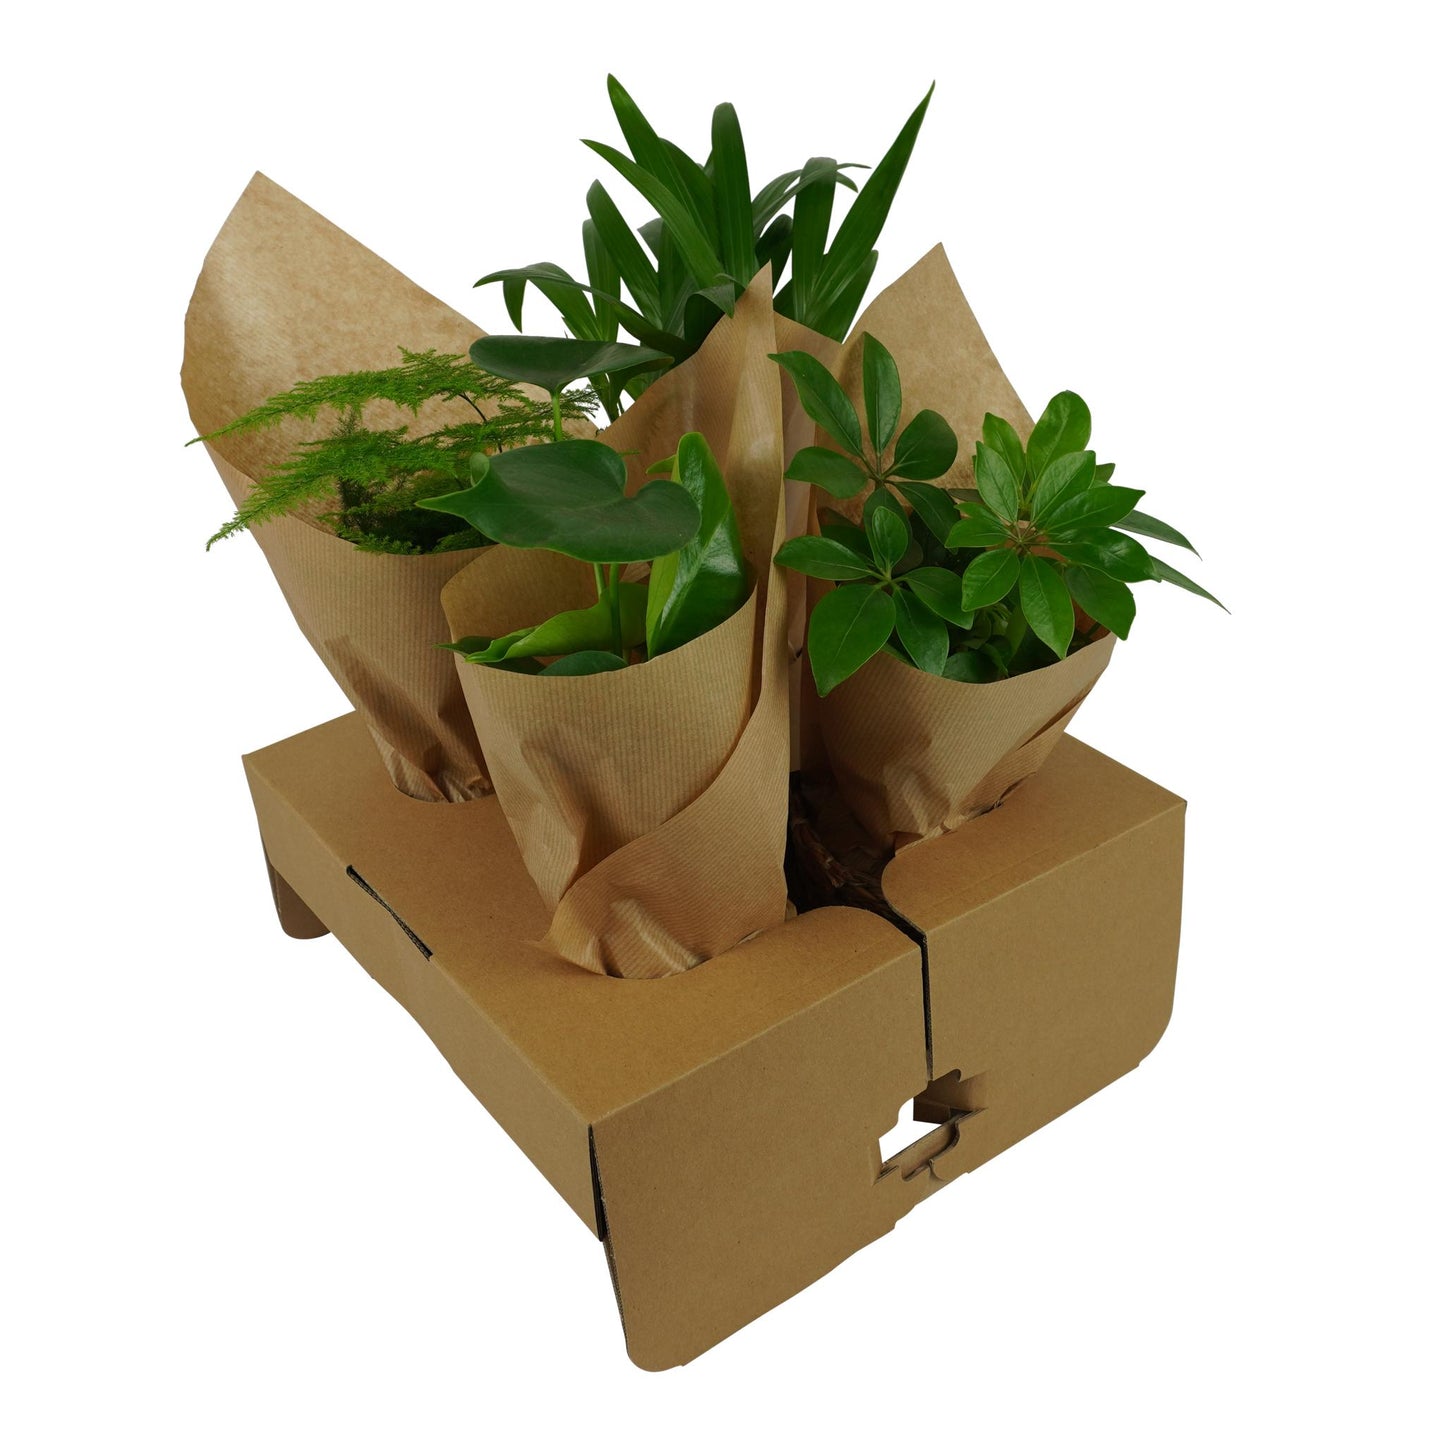 OUR FRIENDS | 4er Pflanzenpaket - Asparagus Plumosus, Schefflera Arboricola, , Areca Lutecens - 30 cm hoch - Kleine Kamerapflanze + Seegraskorb